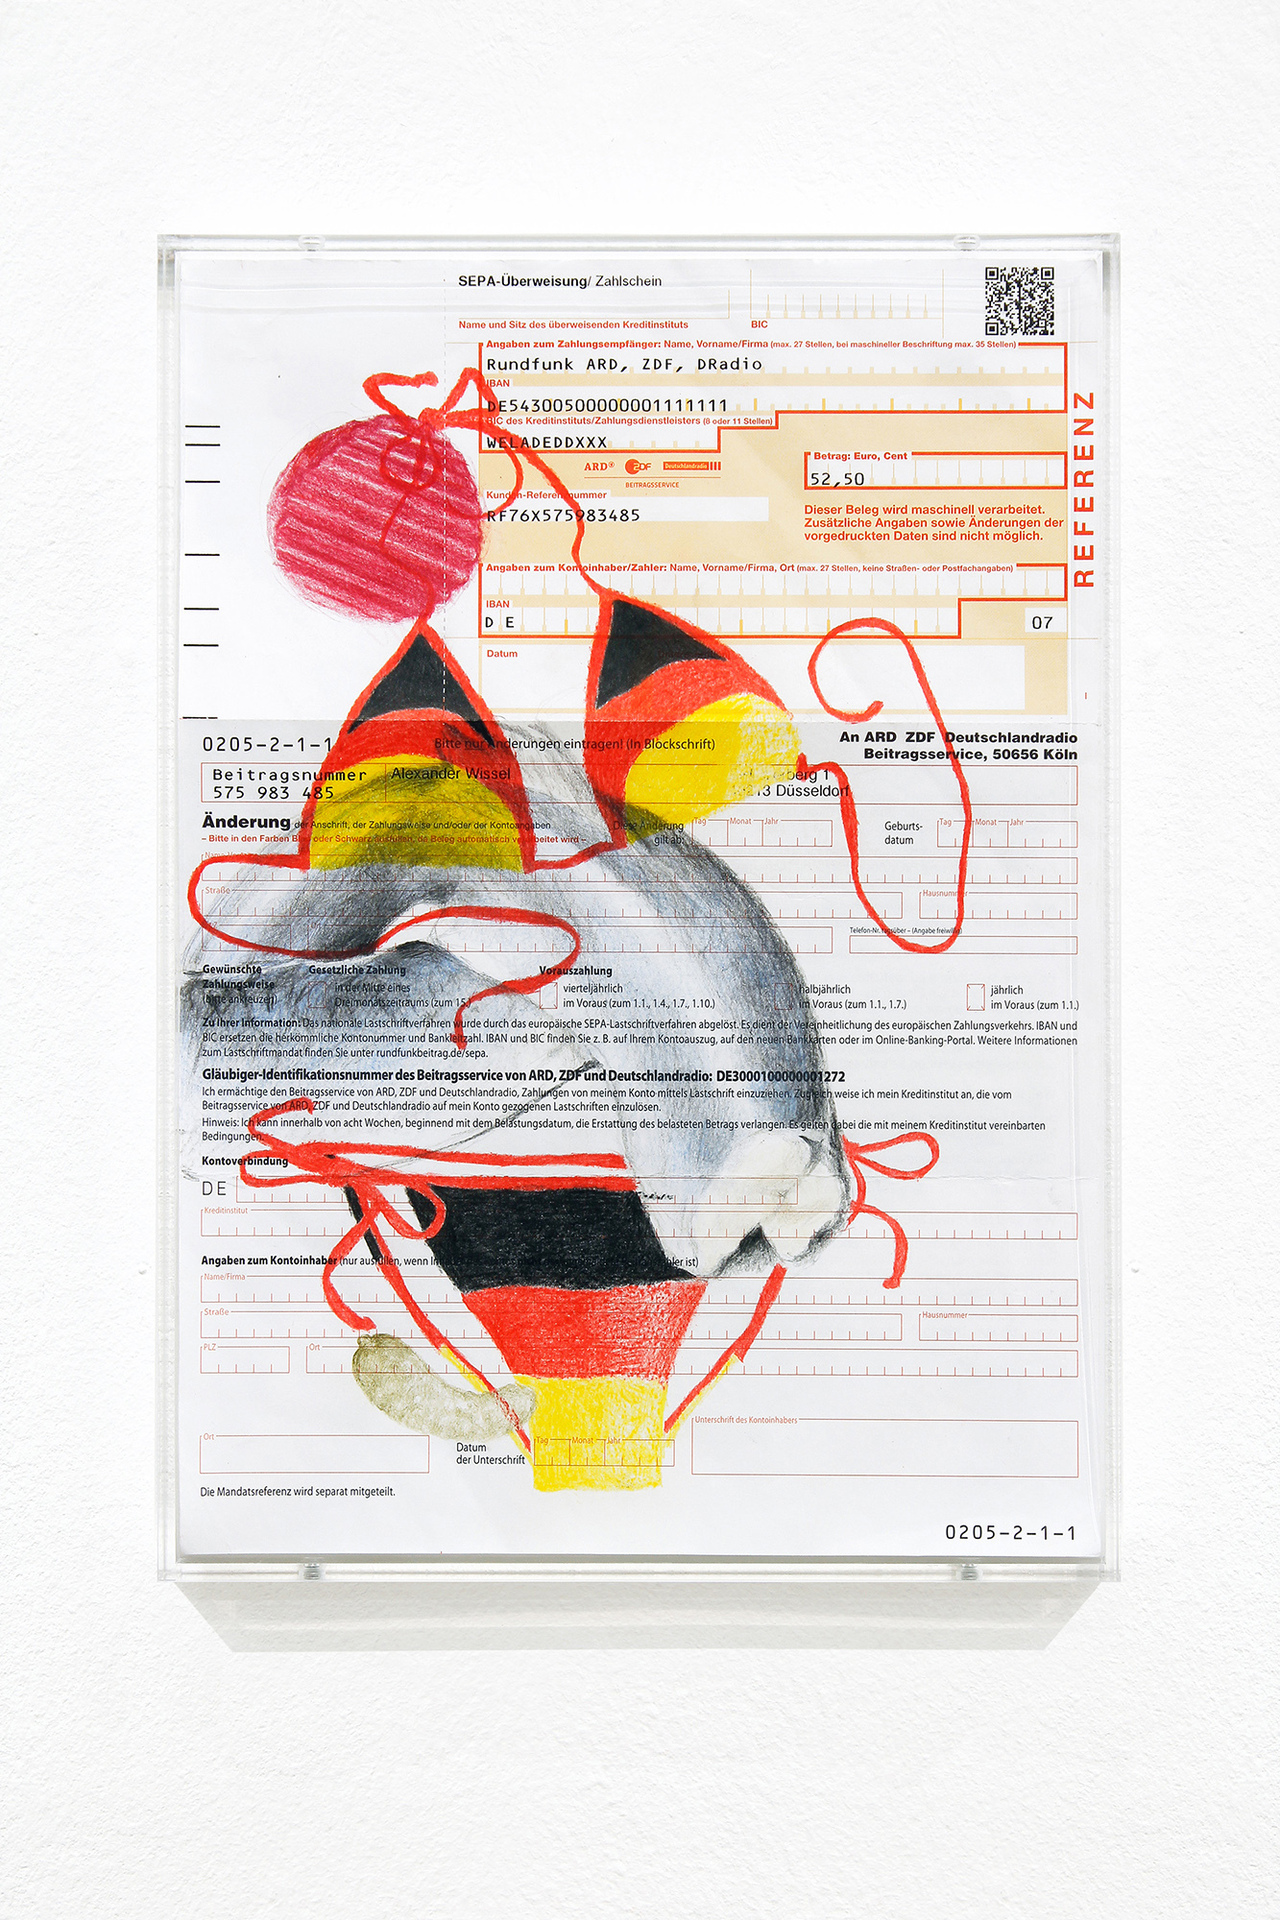 Alex Wissel, Deutschland Wikingerhut und Blutwurst, 2020, Coloured pencil on paper, 29,7 x 21 cm